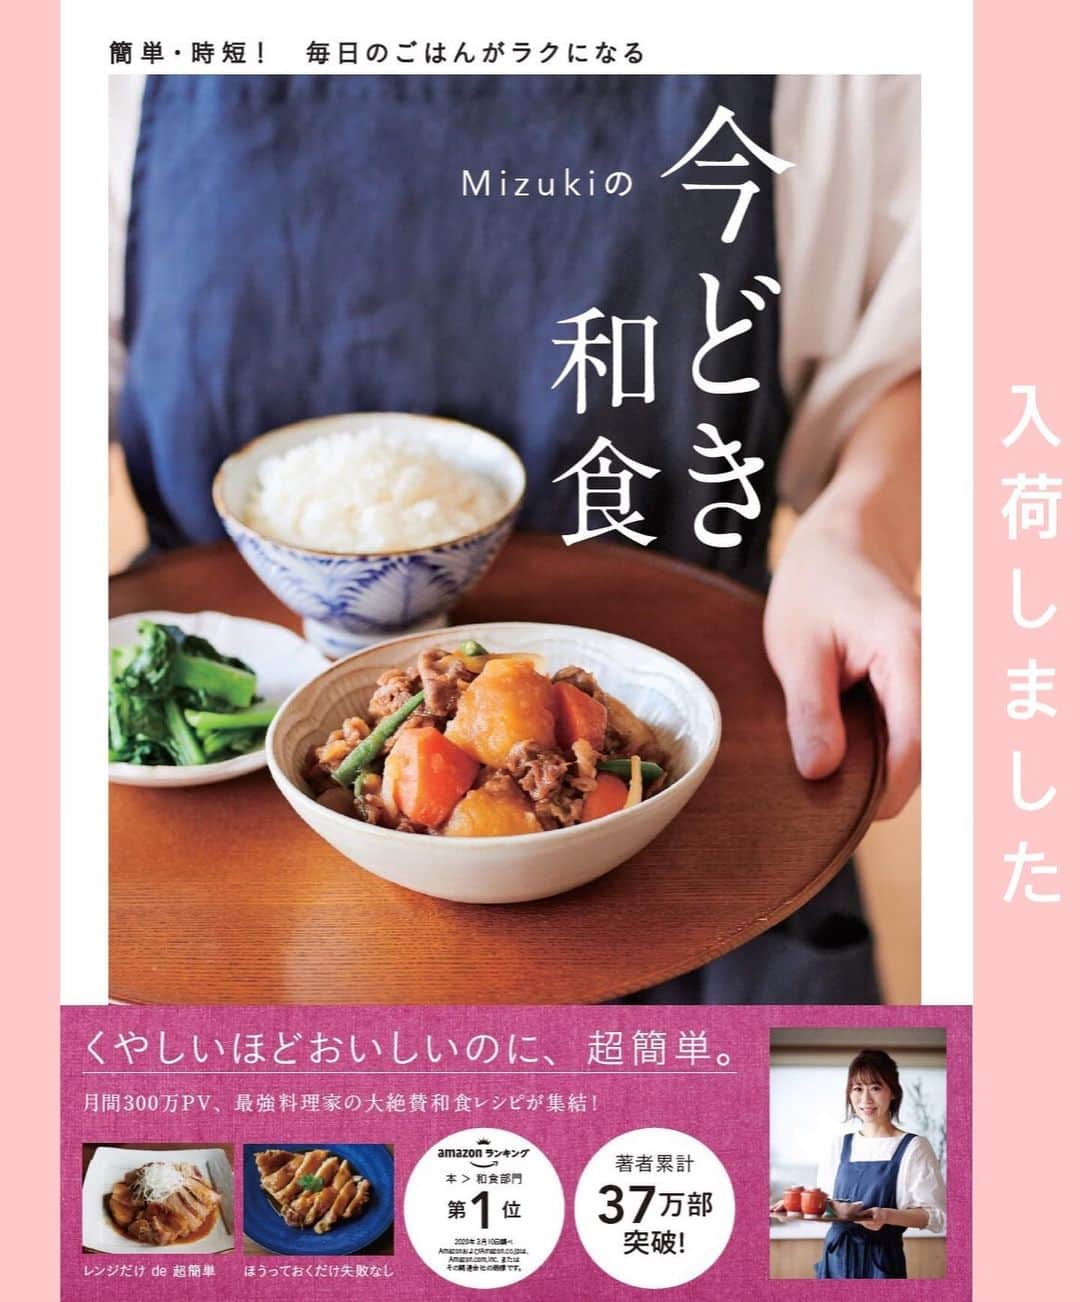 Mizuki【料理ブロガー・簡単レシピ】さんのインスタグラム写真 - (Mizuki【料理ブロガー・簡単レシピ】Instagram)「・﻿ 【レシピ】ーーーーーーーーーーーーーーー﻿ ♡レンジde簡単♡焼肉のたれで麻婆なす♡﻿ ーーーーーーーーーーーーーーーーーーーー﻿ ﻿ ﻿ ﻿ おはようございます(*^^*)﻿ ﻿ 今日ご紹介させていただくのは﻿ レンジで作る麻婆なす♡﻿ 味付けは焼肉のたれで失敗なしの﻿ 超〜簡単レシピです(*´艸`)﻿ ﻿ レンジだと使う油が少しでヘルシー！﻿ しかも、なすは色鮮やかに仕上がりますよ♩﻿ ﻿ ﻿ ﻿ ーーーーーーーーーーーーーーーーーーーー﻿ 【2人分】﻿ なす...2〜3本(300g)﻿ 豚ひき肉...150g﻿ 長ねぎ(みじん切り)...5cm﻿ ●焼肉のたれ...大5﻿ ●水...大1.5﻿ ●片栗粉・ごま油...各小1﻿ ●にんにく・生姜チューブ...各2cm﻿ (好みで)ラー油・万能ねぎ...各適量﻿ ﻿ 1.なすは長さを半分にし、縦6等分に切り、水に3分晒して水気を切る。﻿ 2.耐熱ボウルにひき肉、長ねぎ、●を入れてよく混ぜ、なすをのせる。ふんわりラップし、600Wのレンジで7分加熱する。﻿ 3.よく混ぜて器に盛り、斜め切りにしたねぎとラー油をトッピングする。﻿ ーーーーーーーーーーーーーーーーーーーー﻿ ﻿ ﻿ ﻿ 《ポイント》﻿ ♦︎焼肉のたれは甘口、中辛、辛口、どれでもOK！﻿ ♦︎大きめのなすを2本使用しました☆小さいものなら3本にしても♩﻿ ♦︎加熱時間は目安です☆レンチン後まだなすが硬そうでも、混ぜている間にも火が通ります♩それでも硬い場合は追加加熱して下さい☆﻿ ♦︎直径20cmの耐熱ボウルを使用しています♩﻿ ﻿ ﻿ ﻿ ﻿ ﻿ ﻿ ﻿ 🔻入荷しました🔻﻿ ストーリーにリンク貼っています🙇‍♀️﻿ ＿＿＿＿＿＿＿＿＿＿＿＿＿＿＿＿＿＿＿﻿ 📕\ \ 新刊発売中 / /📕﻿ 簡単・時短！ 毎日のごはんがラクになる﻿ ✨🦋 【 #Mizukiの今どき和食 】🦋✨﻿ ＿＿＿＿＿＿＿＿＿＿＿＿＿＿＿＿＿＿＿﻿ ﻿ なるべく少ない材料で﻿ 手間も時間も省きながら﻿ 簡単にできるおいしい和食レシピ♩﻿ 簡単に失敗なくマスターできる一冊で﻿ もっと気軽に、カジュアルに﻿ 和食を楽しんで下さいね(*^^*)﻿ ﻿ ﻿ ーーー ⭐️PART.1 メインおかず ⭐️ーーー﻿ 素材別にレシピをご紹介しています♩﻿ 和食の定番から新定番まで﻿ どれも押さえておきたいメニューばかり。﻿ 肉じゃがはフライパンで！焼き豚はレンジで！﻿ ぶり大根は切り身を使って手軽に作ります♩﻿ ﻿ ーーー ☘️PART.2 サブおかず ☘️ーーー﻿ 年中手に入るお手頃野菜と﻿ 乾物や大豆、こんにゃくなどを使った﻿ 副菜レシピをたっぷり掲載！！﻿ 普段SNSではメインおかずばかりなので﻿ 本では副菜にも力を入れています(*^^*)﻿ ﻿ ーーー 🌸PART.3 ごはんと汁物 🌸ーーー﻿ ささっと作れる丼と麺、﻿ みんなで食べたいいなり寿司や﻿ 手巻きごはんもご紹介！﻿ 複数の炊き込みごはんと﻿ 味噌汁&和風スープも盛りだくさん！﻿ ﻿ ﻿ 各レシピのポイントは﻿ 【写真付きで丁寧に解説】﻿ 副菜レシピもたっぷりなので﻿ 【メインページに副菜メモもつけました】﻿ ＊このメインにはこの副菜が合いますよ〜﻿ という献立の提案です(*^^*)﻿ 【その他コラムも充実】﻿ 全127品中ほぼ全て﻿ 【本だけのレシピです！】﻿ ＿＿＿＿＿＿＿＿＿＿＿＿＿＿＿＿＿＿＿﻿ ﻿ ﻿ ﻿ ﻿ ﻿ ＿＿＿＿＿＿＿＿＿＿＿＿＿＿＿＿＿﻿ 🎀発売中🎀﻿ 【#ホットケーキミックスのお菓子 】﻿ ﻿ 一冊まるっとホケミスイーツ♩﻿ 普段のおやつから﻿ 特別な日にも使えるレシピを﻿ この一冊に詰め込みました(*^^*)﻿ ホットケーキミックスを使えば﻿ 簡単に本格的なお菓子が作れますよ♡﻿ ＿＿＿＿＿＿＿＿＿＿＿＿＿＿＿＿＿﻿ ﻿ ⭐️ストーリー、ハイライト、プロフ画面に﻿ 本のURLを貼らせていただいております♩﻿ →(@mizuki_31cafe )﻿ ﻿ ﻿ ﻿ ﻿ ﻿ #レンジ#麻婆なす#焼肉のたれ#ヘルシー#うちで過ごそう#おうち時間#Mizuki#簡単レシピ#時短レシピ#節約レシピ#料理#レシピ#フーディーテーブル#マカロニメイト#おうちごはん#おうちカフェ#デリスタグラマー#料理好きな人と繋がりたい#おうちごはんlover#foodpic#follow#cooking#recipe#lin_stagrammer#stayhome#レンジ麻婆なすm」5月24日 7時10分 - mizuki_31cafe